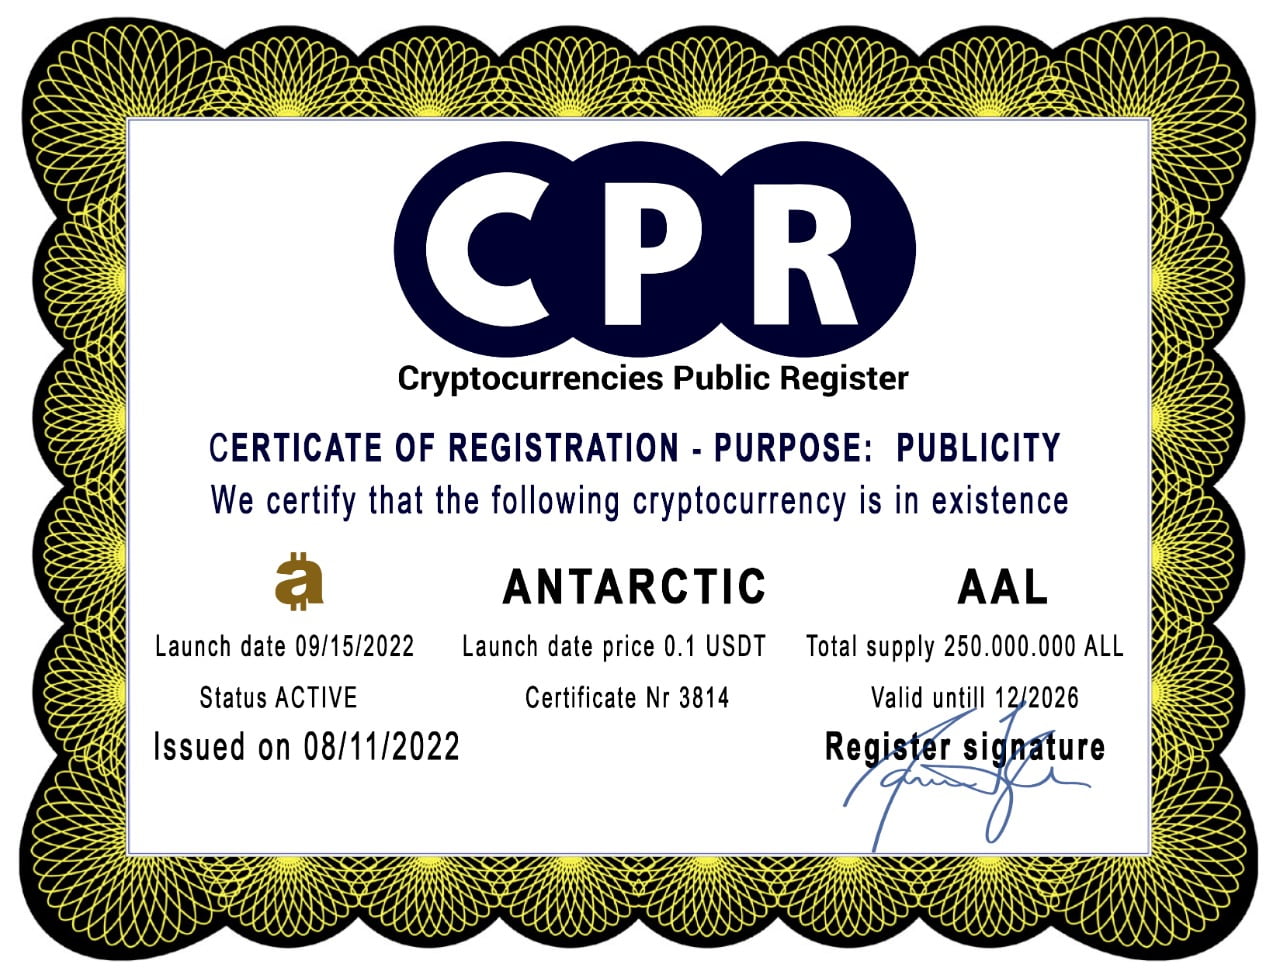 Certificato di Registrazione emesso dal CPR